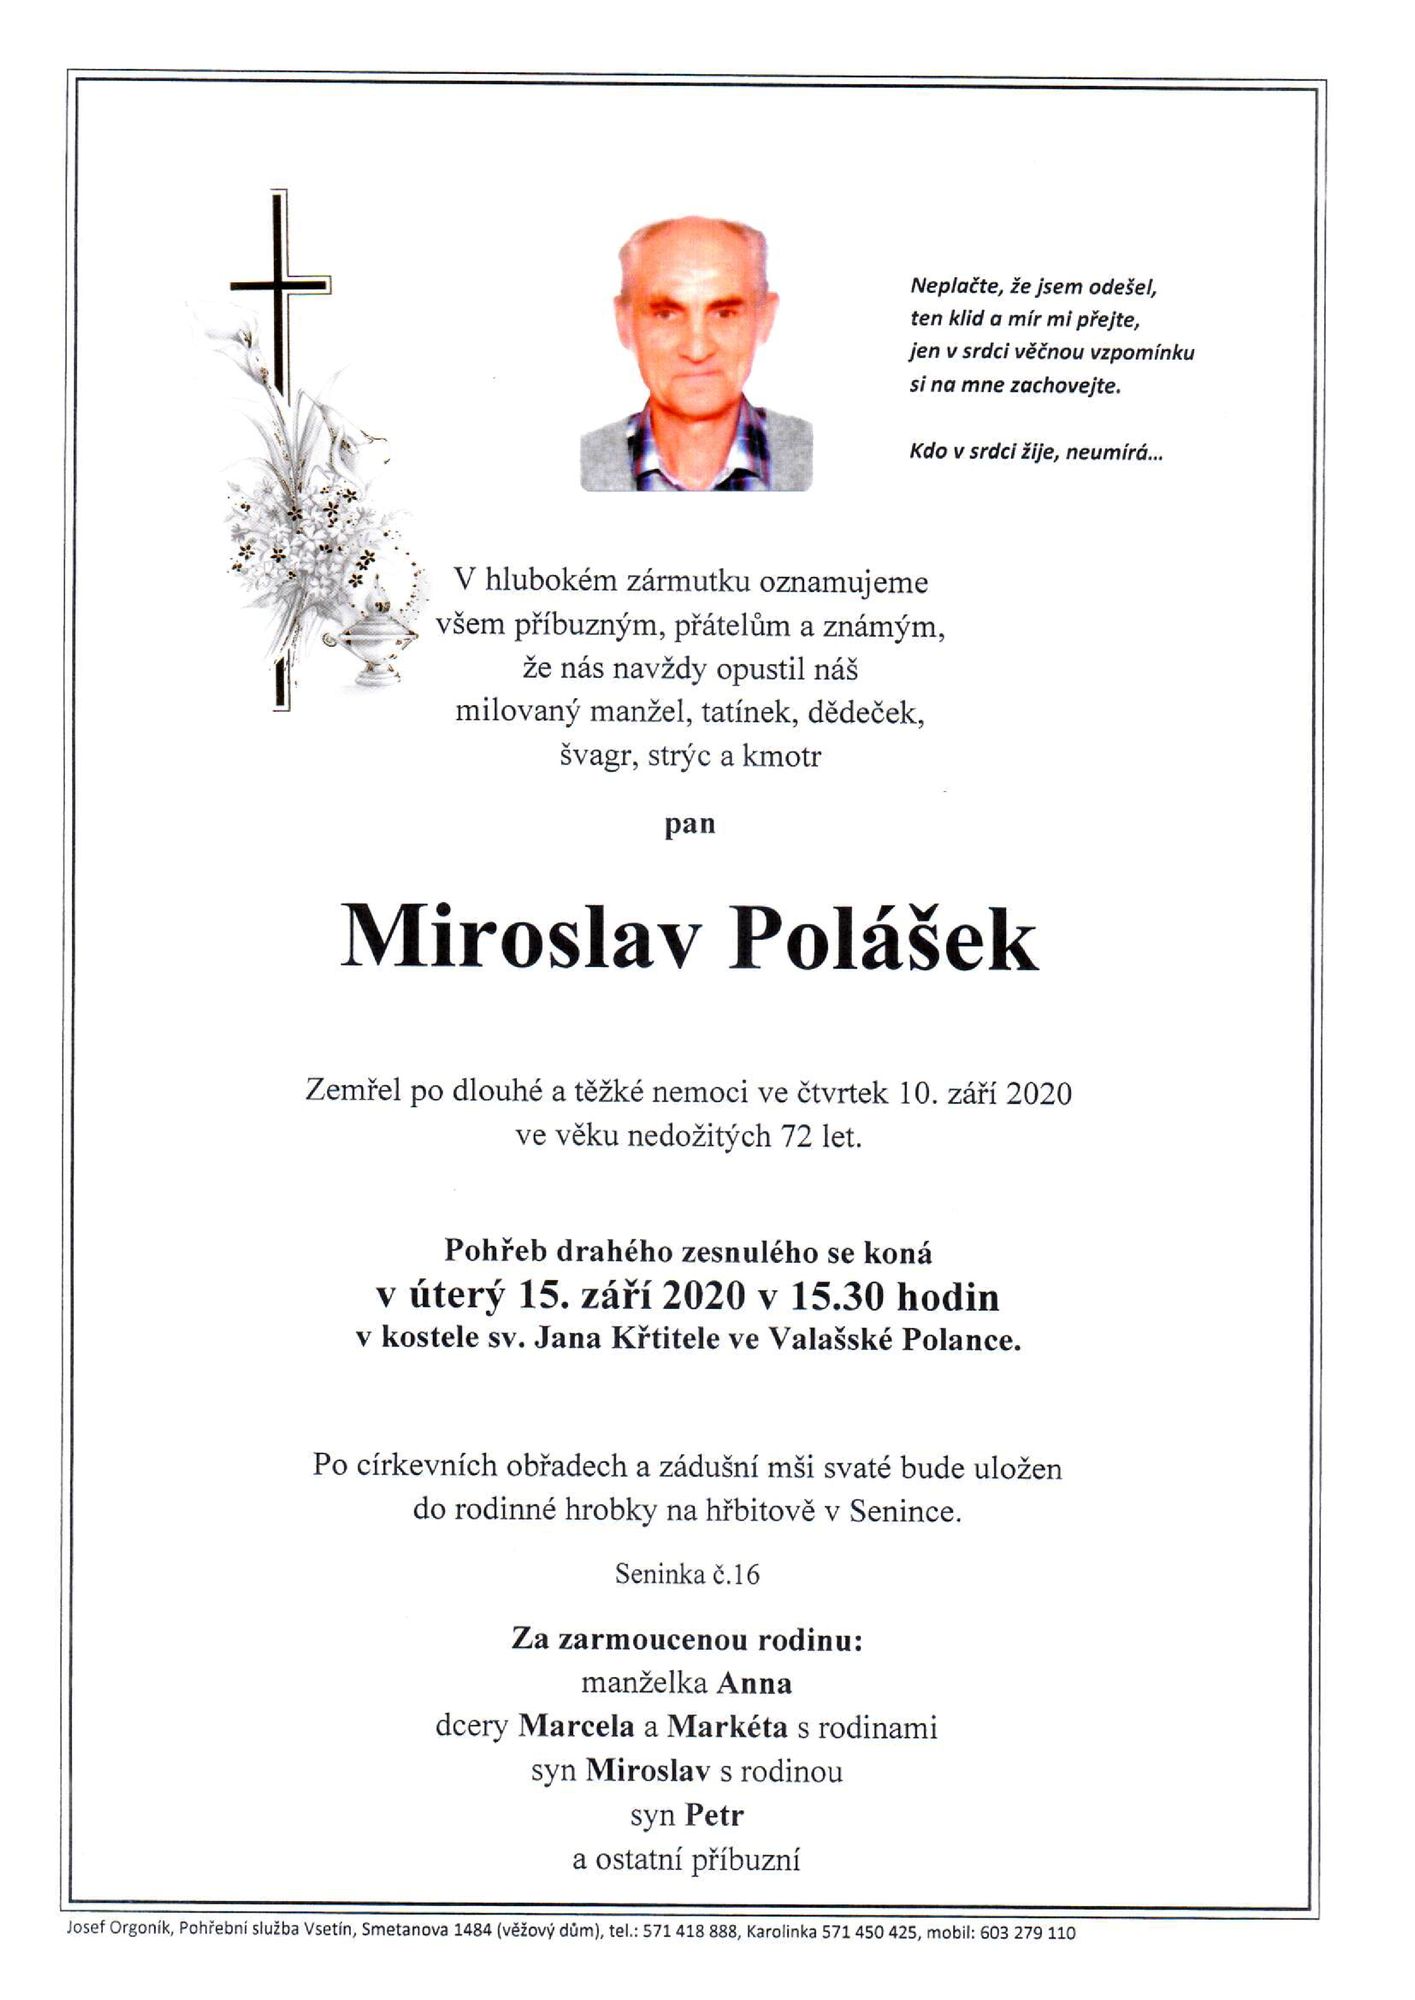 Miroslav Polášek